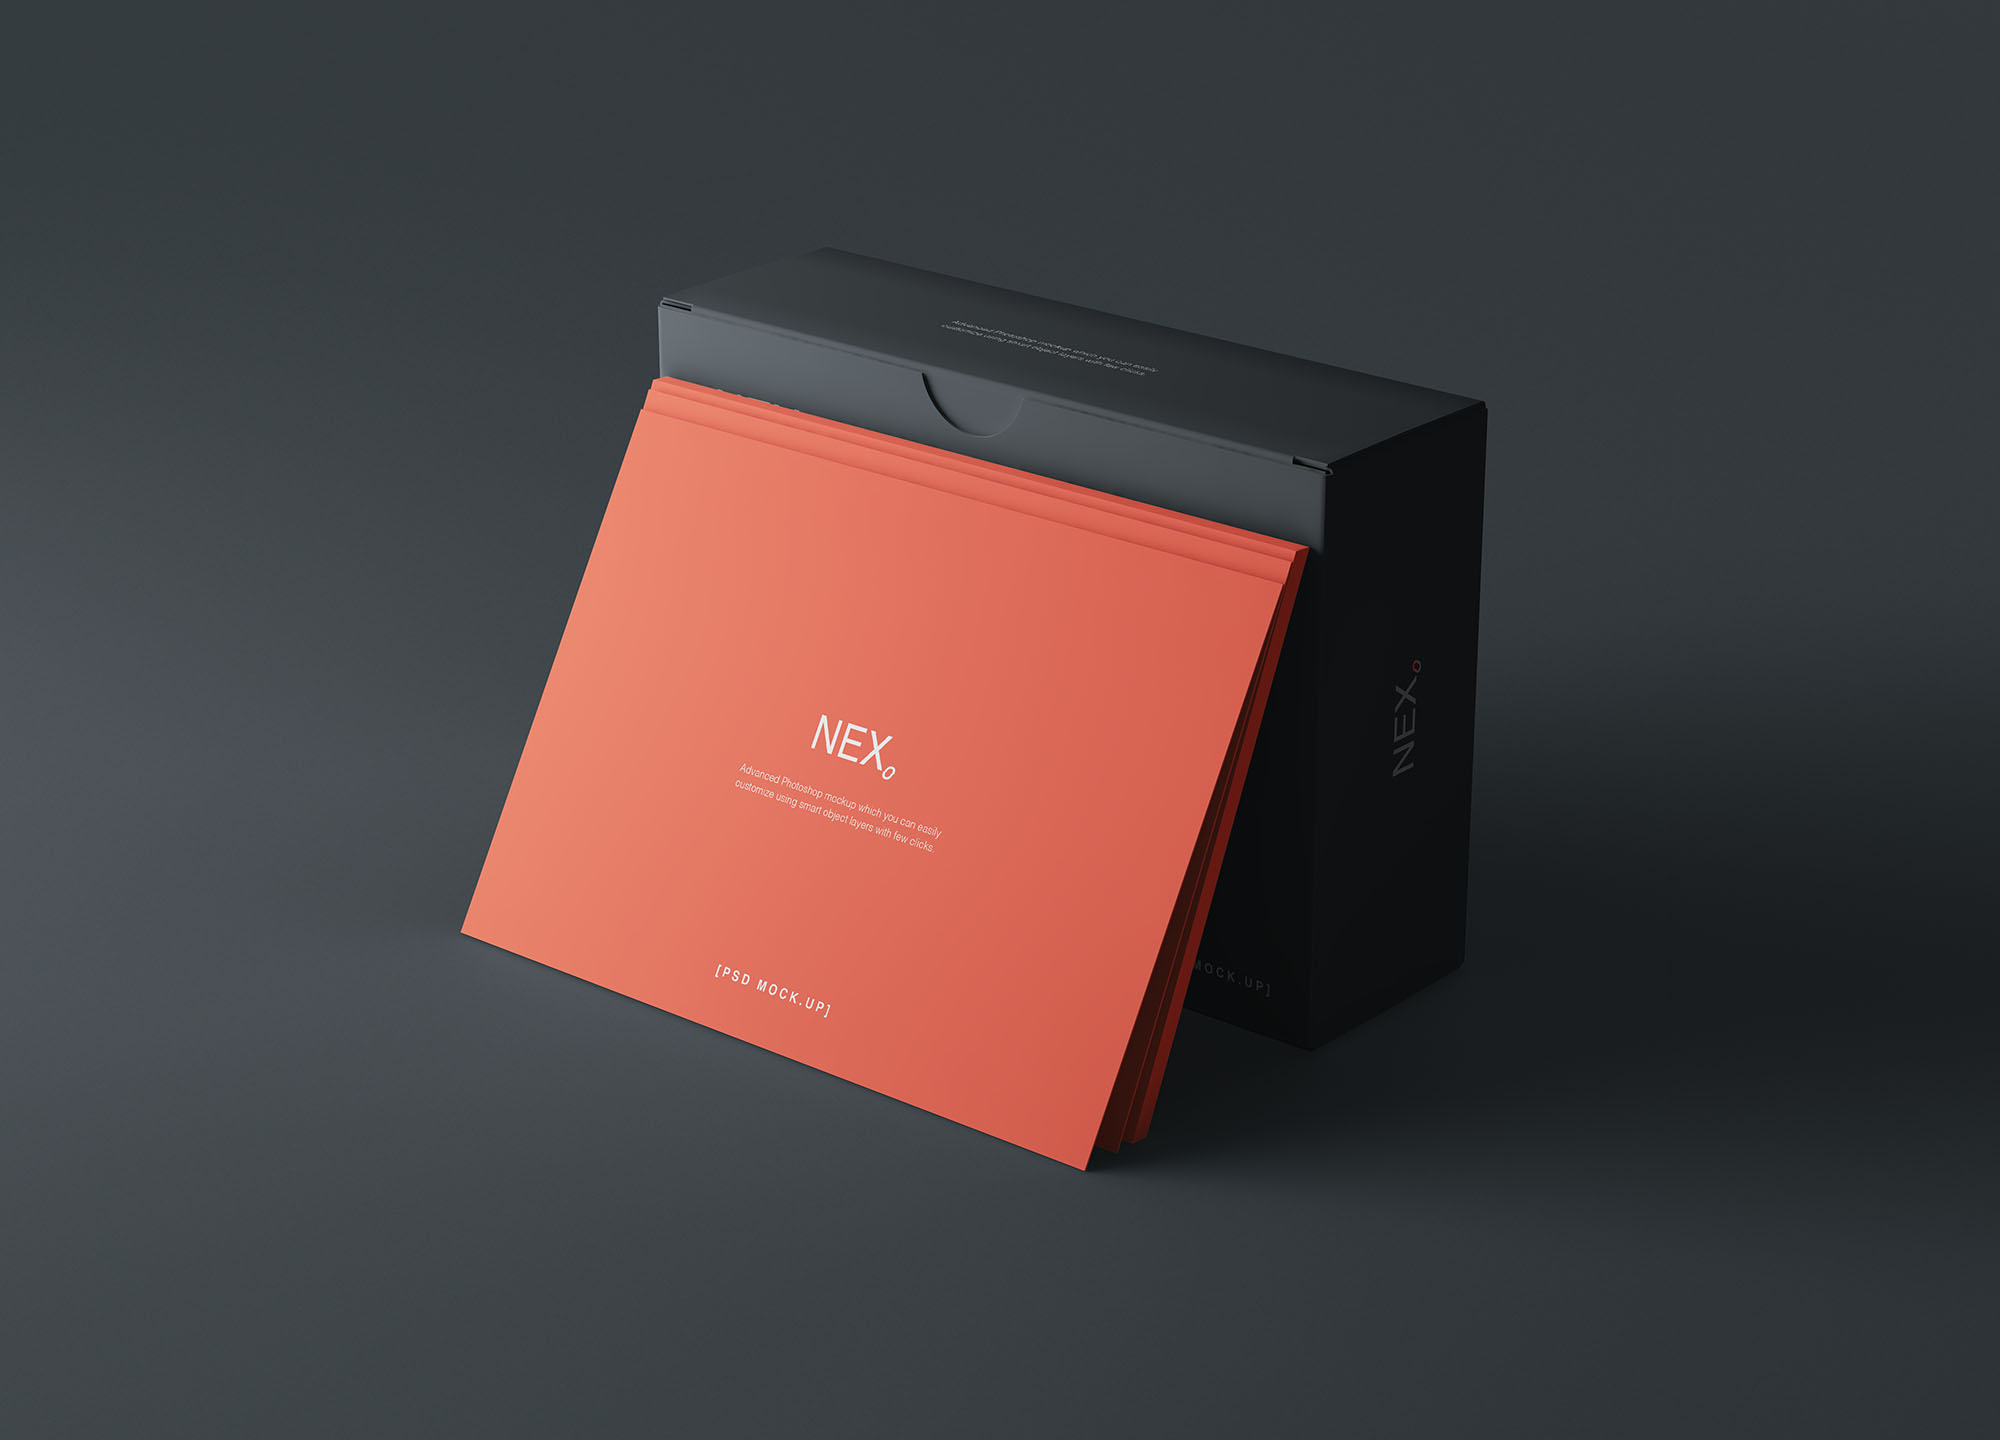 卡片包装盒外观设计效果图素材库精选 Card Box Mockup插图(3)